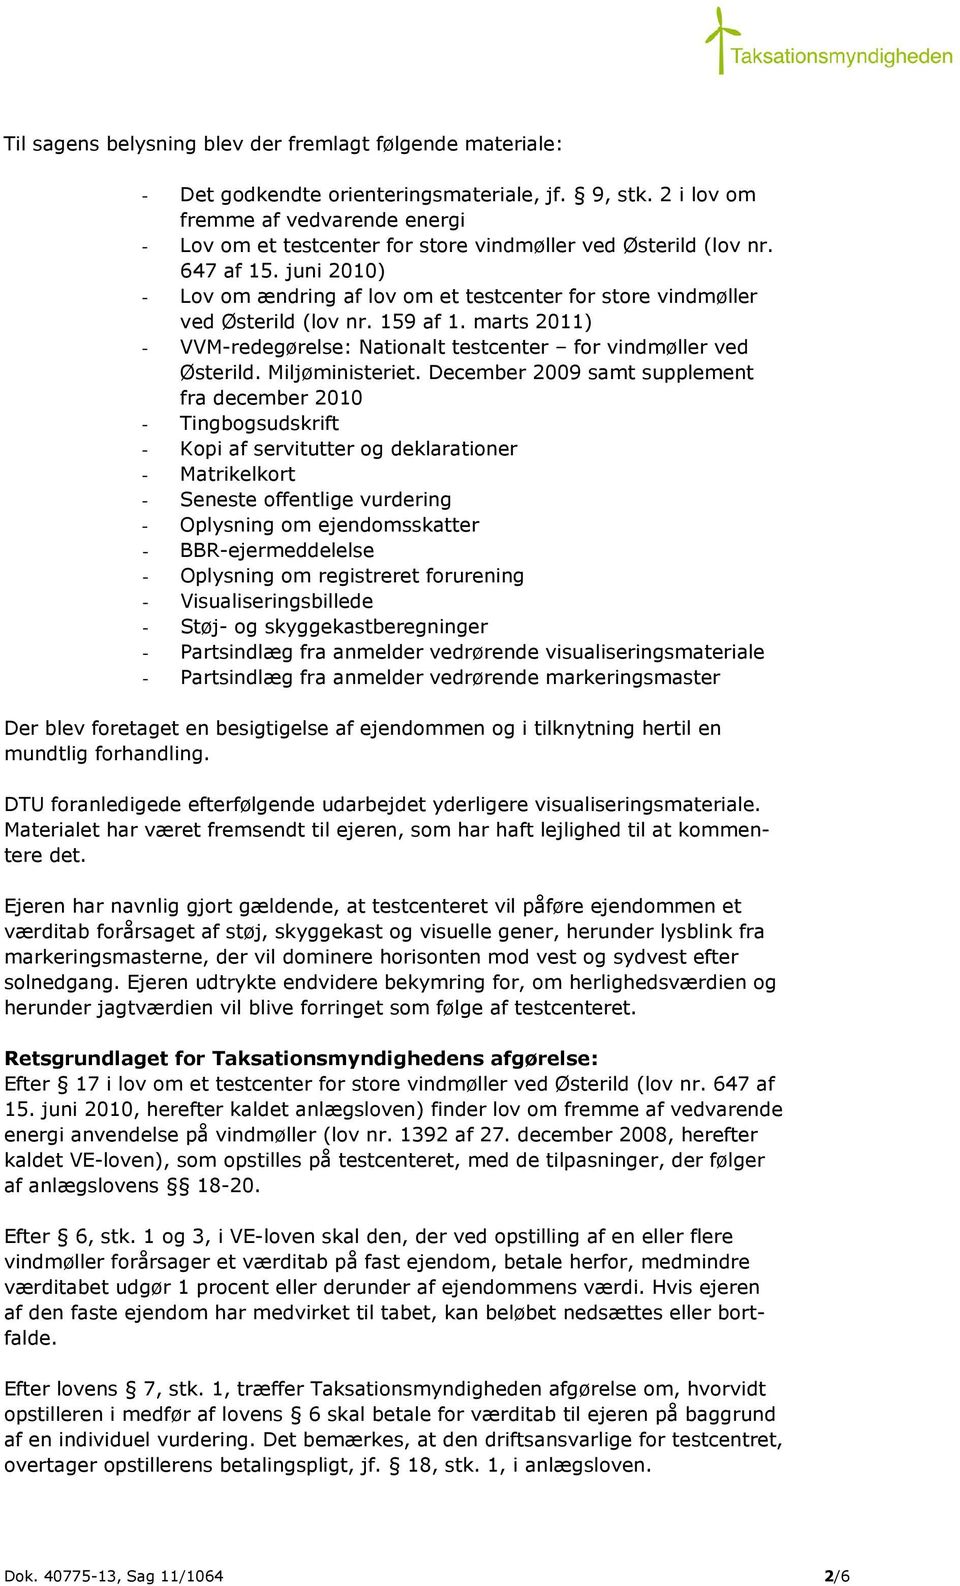 juni 2010) - Lov om ændring af lov om et testcenter for store vindmøller ved Østerild (lov nr. 159 af 1. marts 2011) - VVM-redegørelse: Nationalt testcenter for vindmøller ved Østerild.